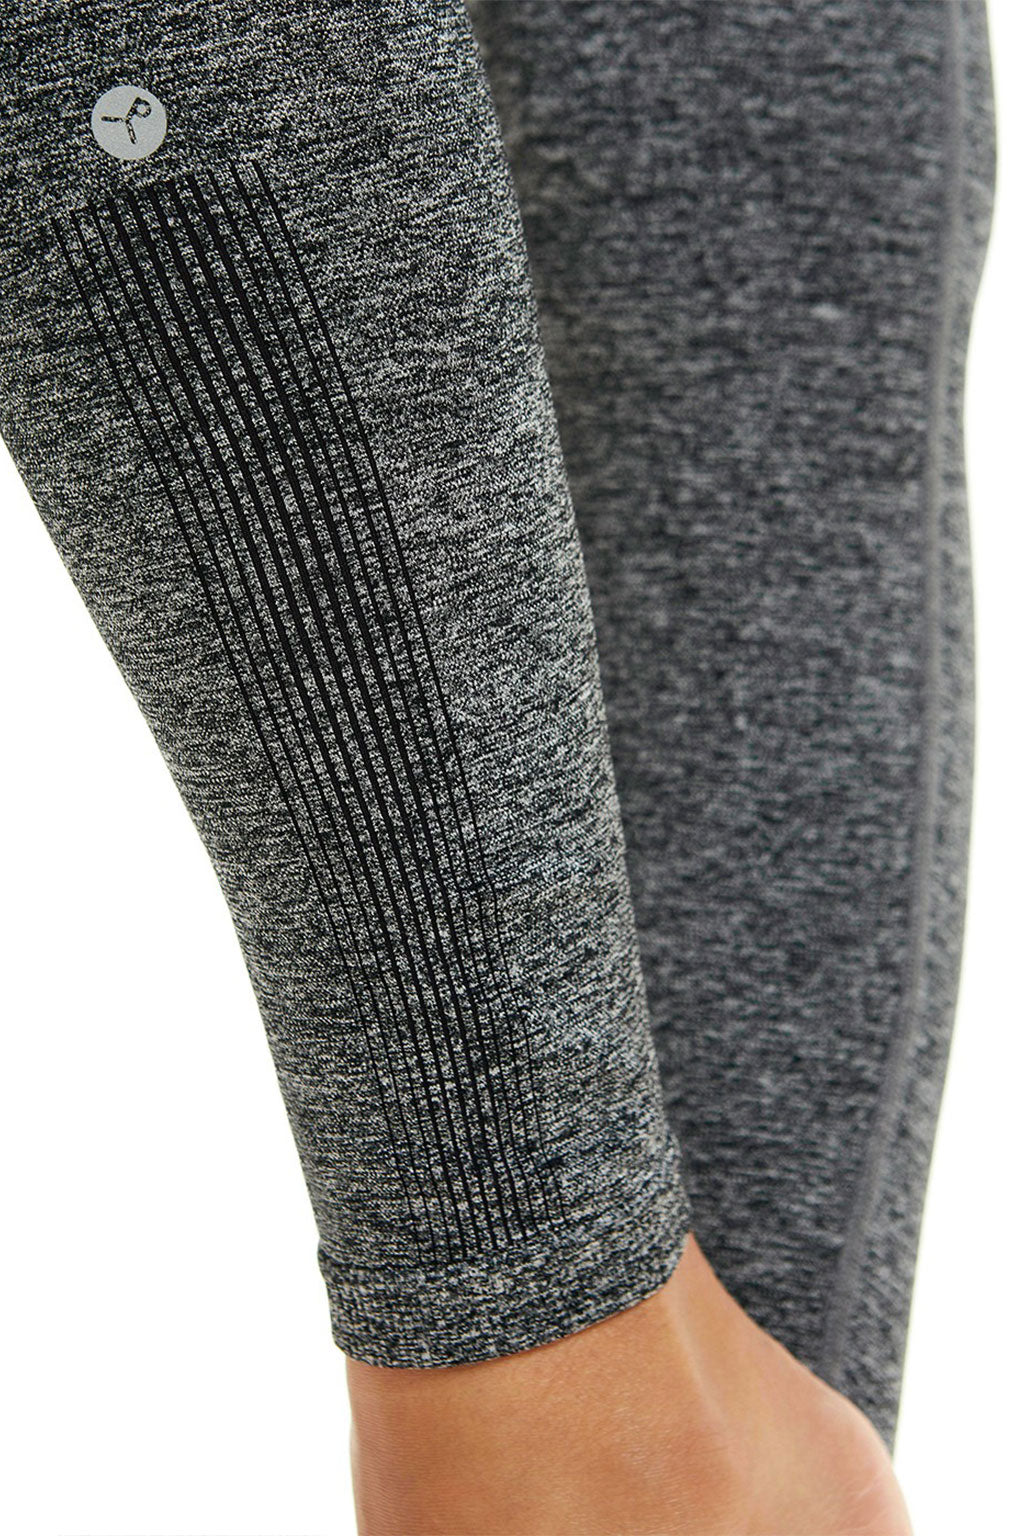 Lululemon Gray Striped Leggings Size 8